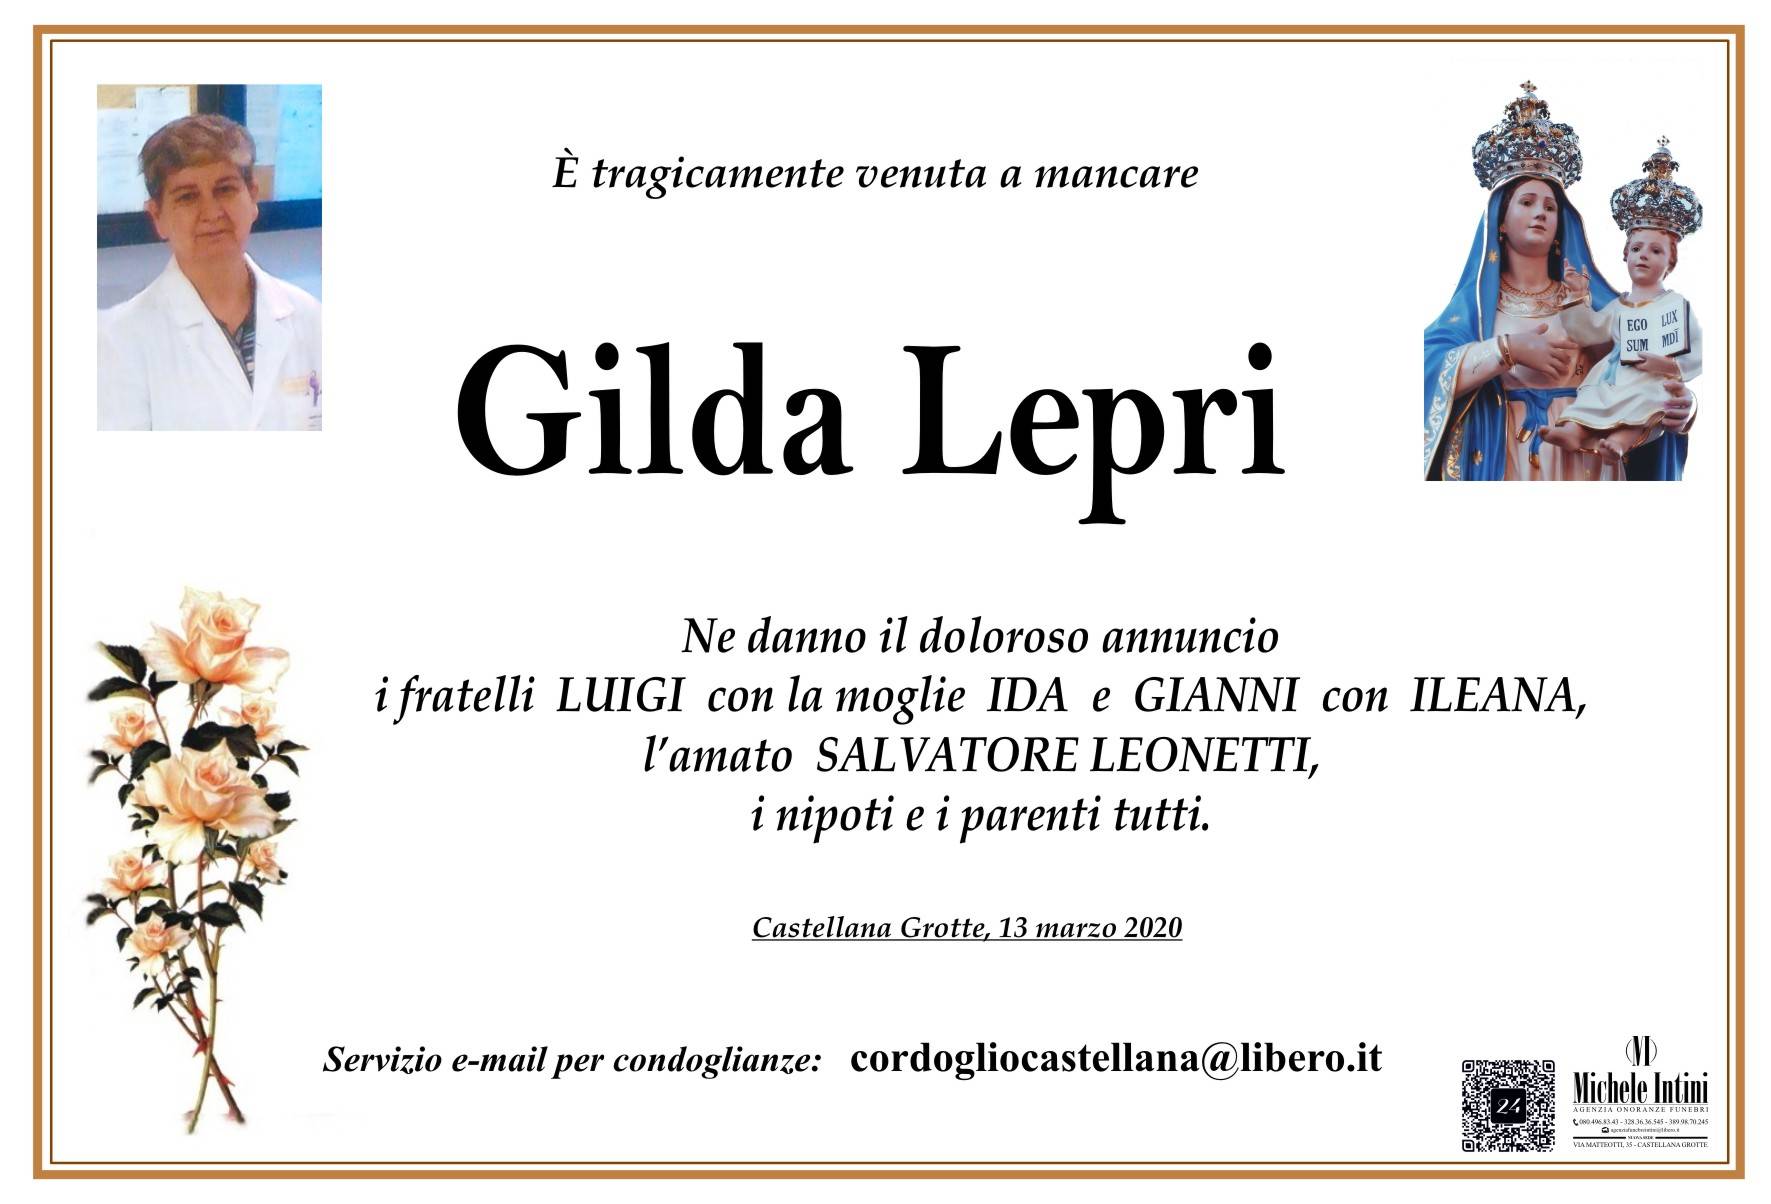 Gilda Lepri